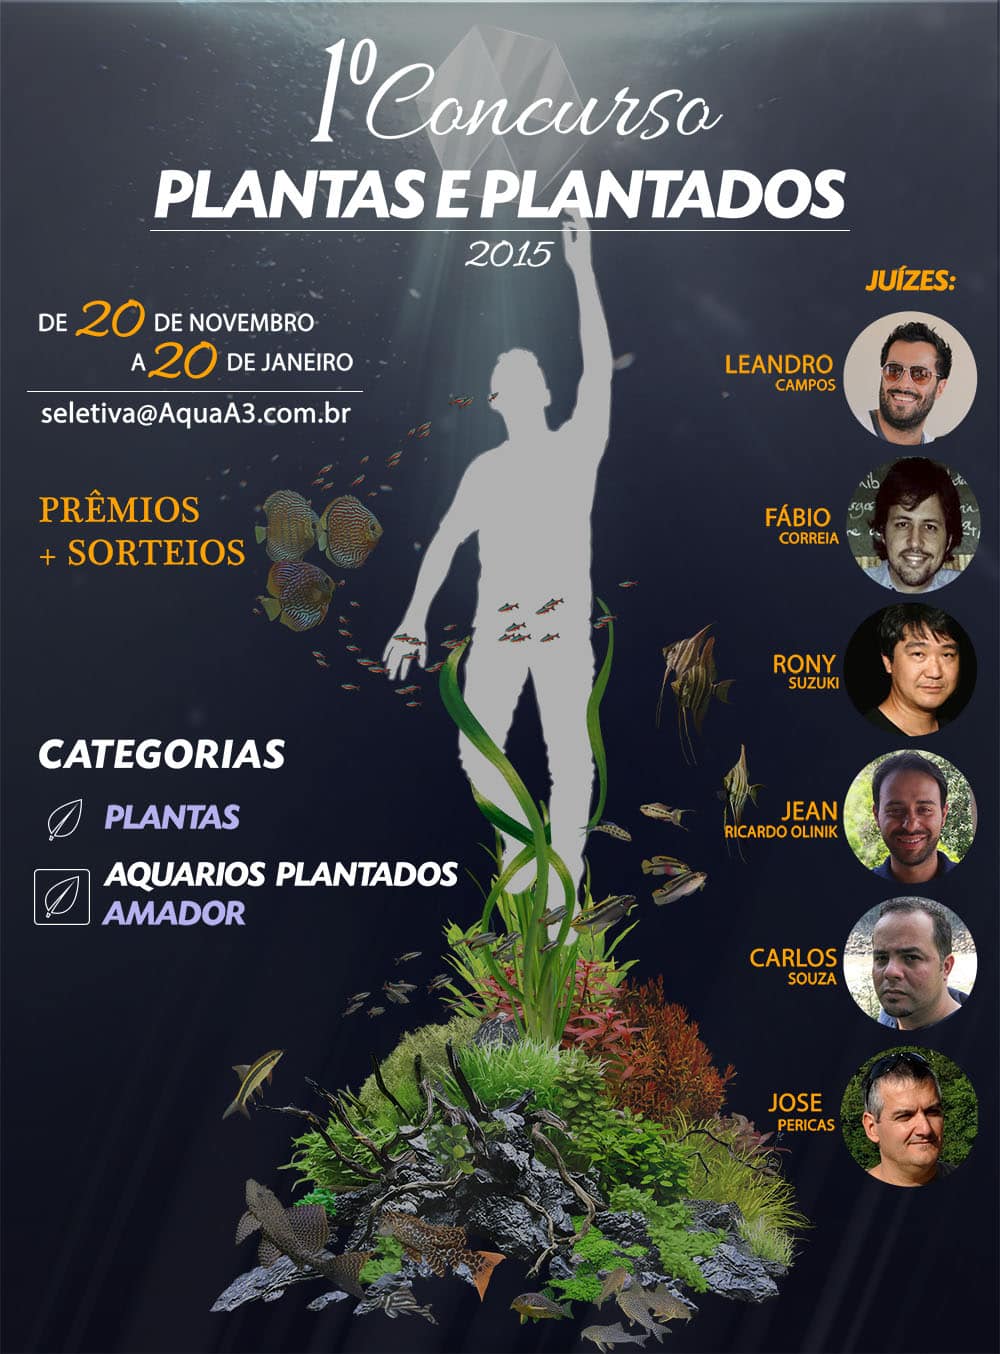 1º Concurso Plantas e Plantados de aquapaisagismo 2015